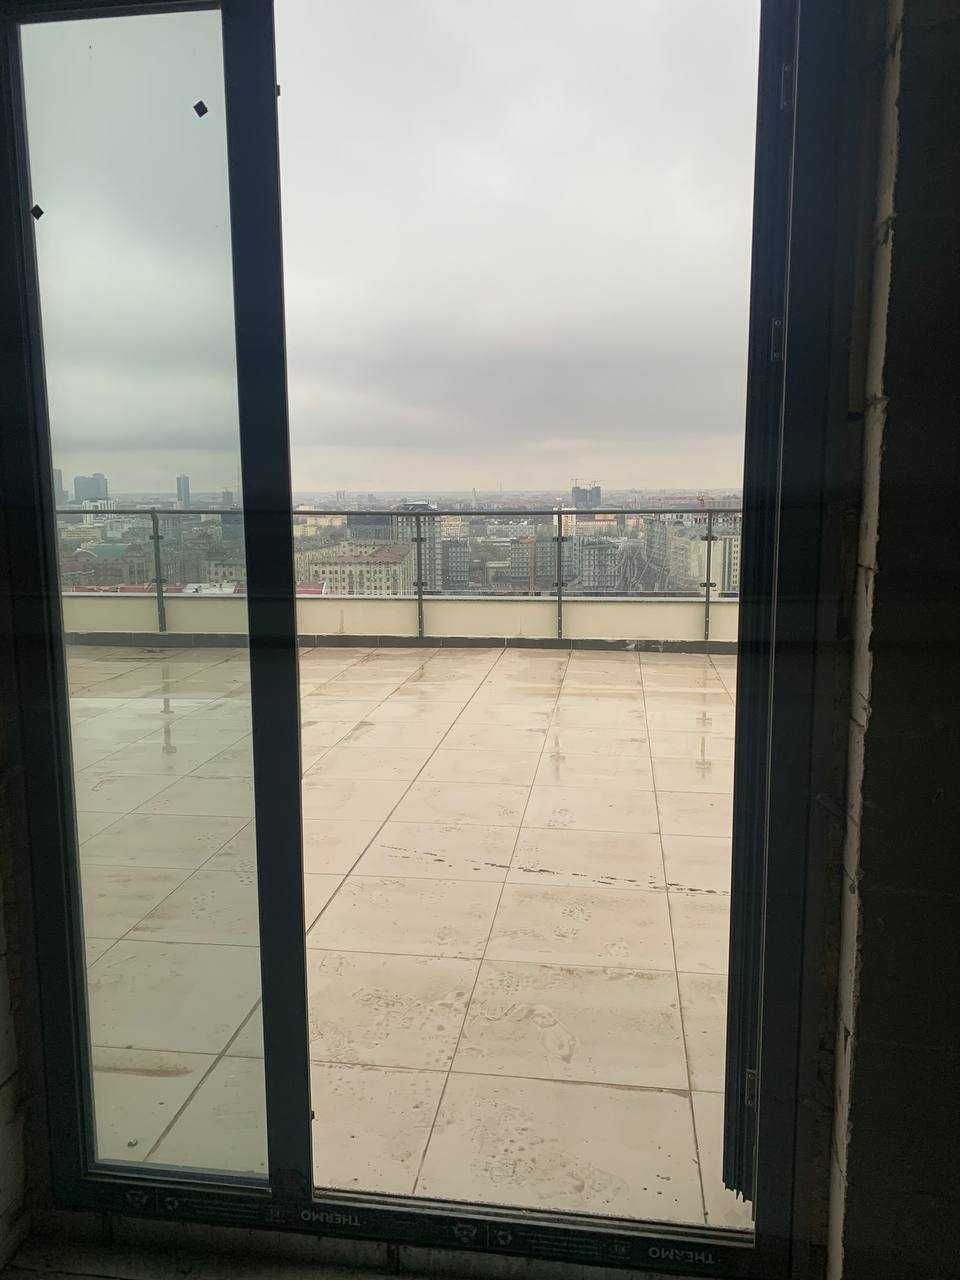 двушка 77м2 + терраса 131м2 в Akay City на Дархане 21 этаж!`